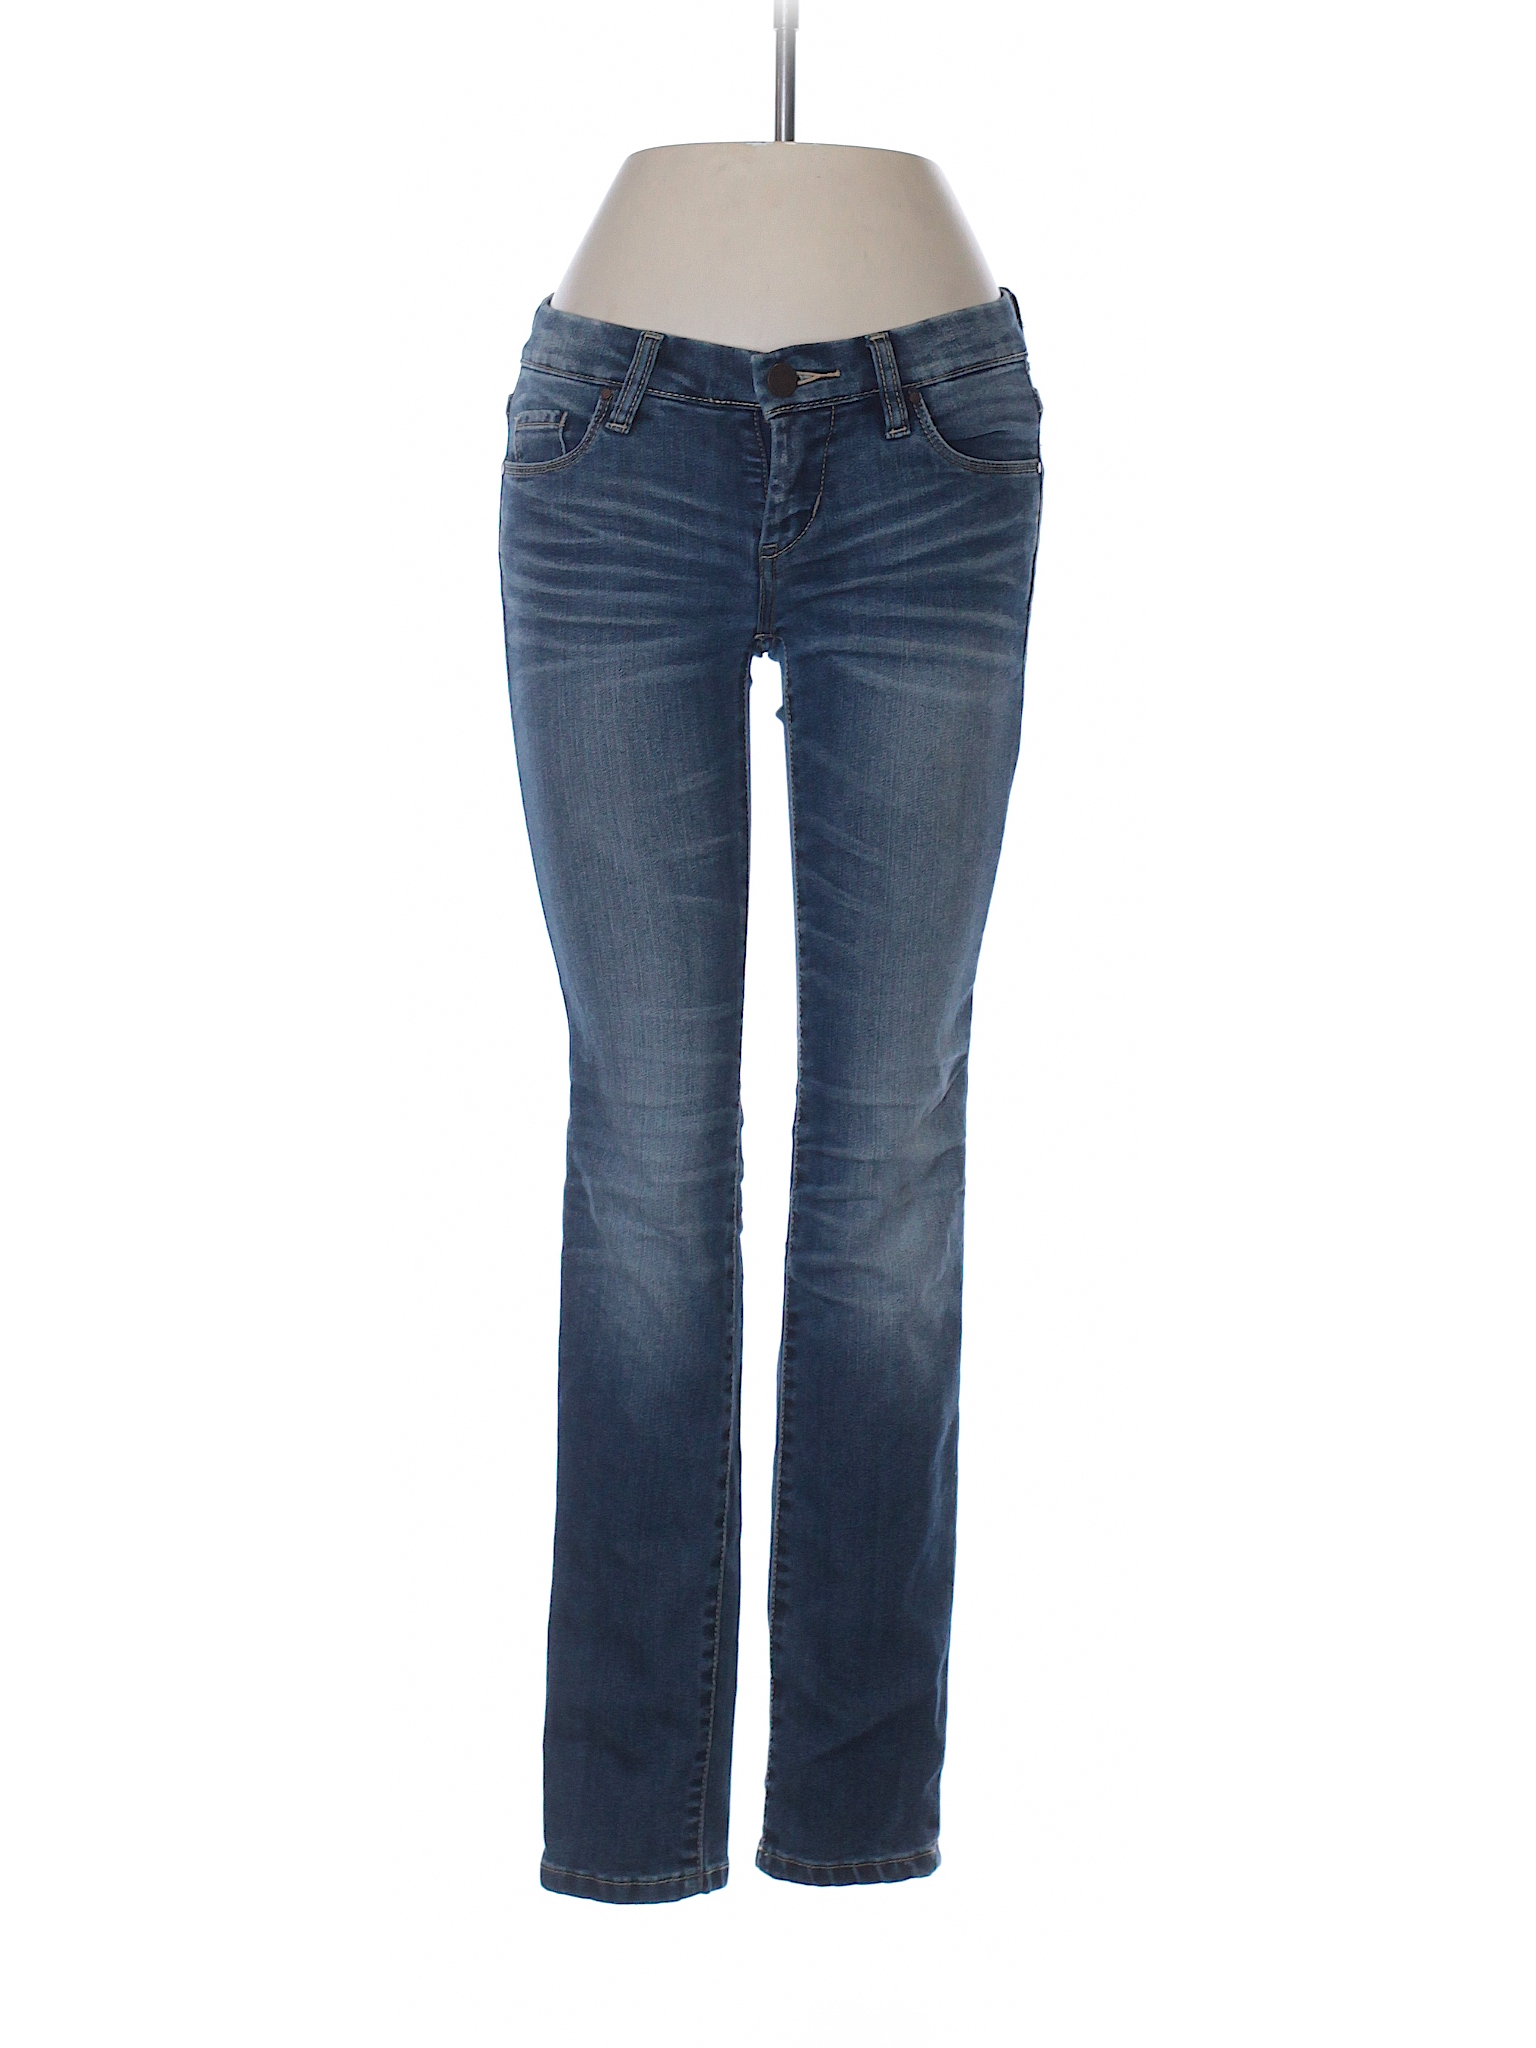 Blank NYC Solid Dark Blue Jeans 24 Waist - 83% off | thredUP